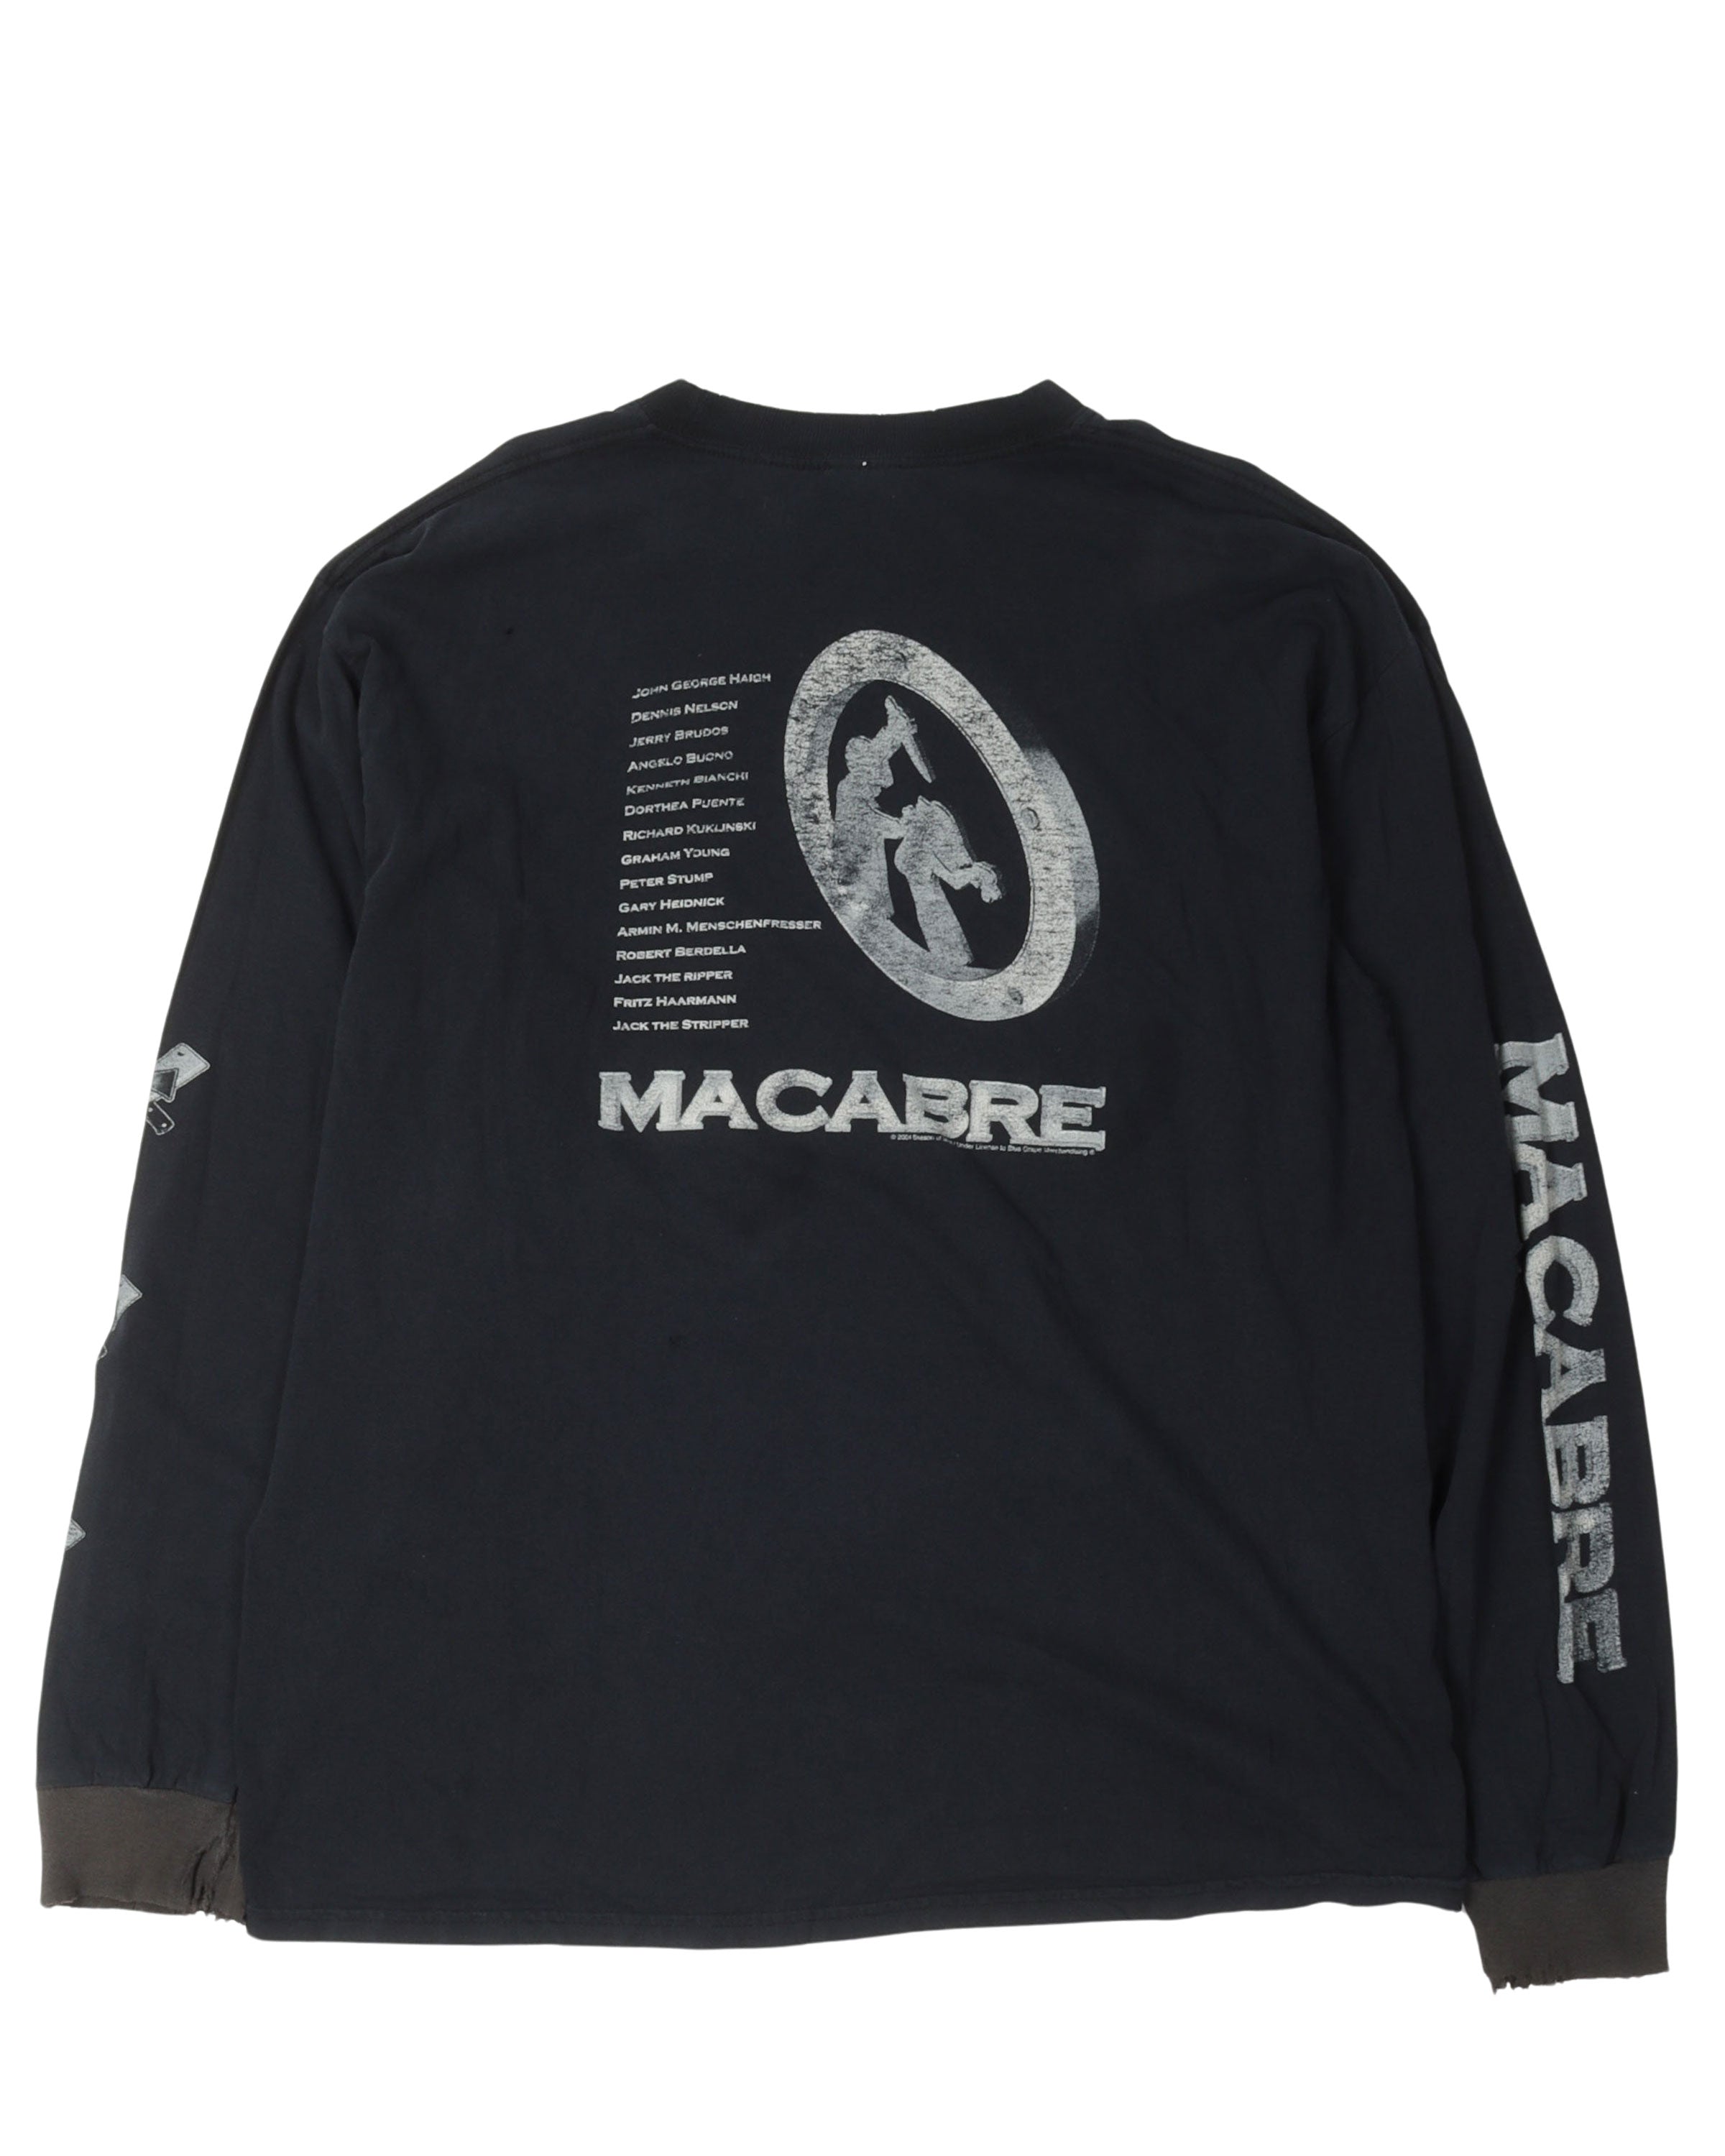 Macabre Murder Metal Long Sleeve T-Shirt